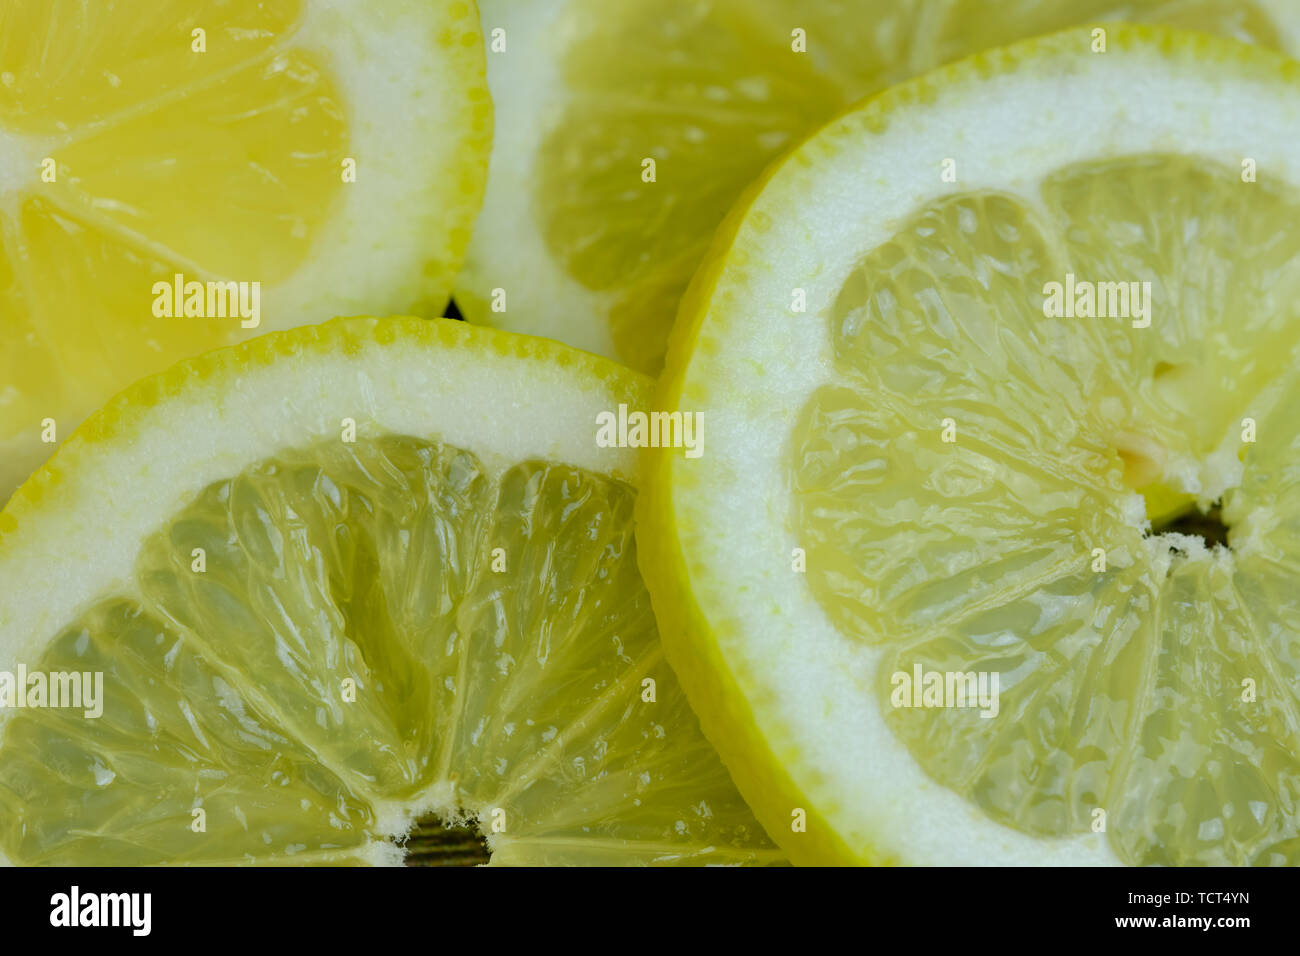 Zitronenscheiben Farbe Foto, Bild als Hintergrund für Text Stockfoto